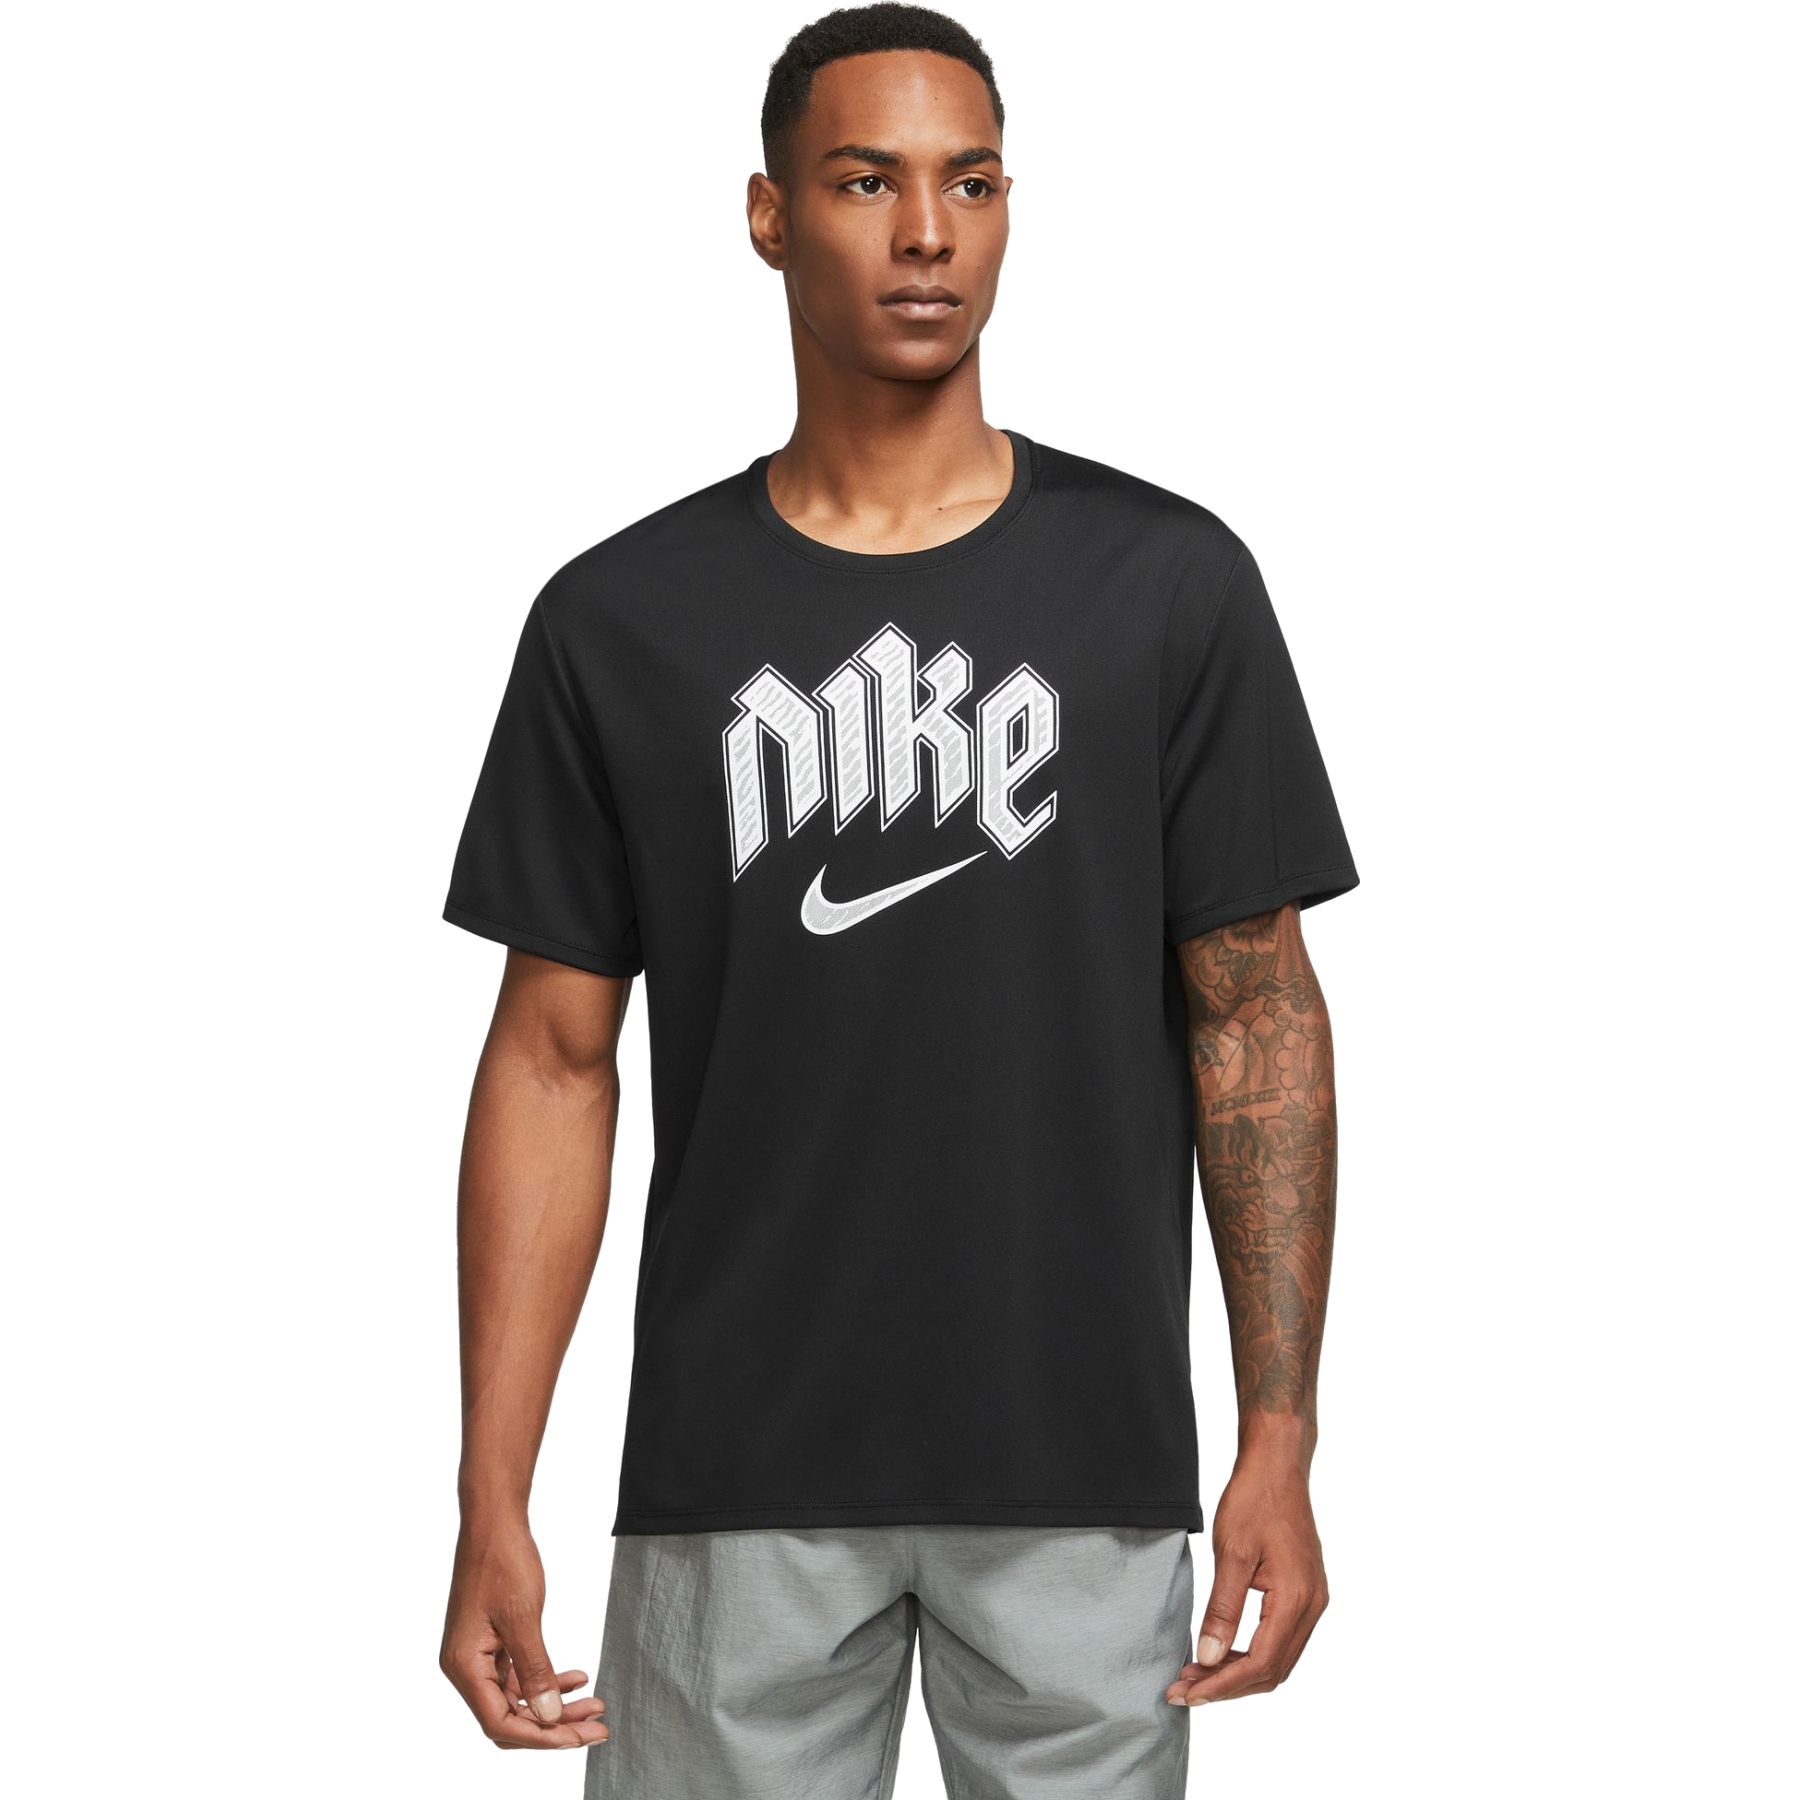 Camiseta Running Hombre Nike Dri-fit Miler Negro